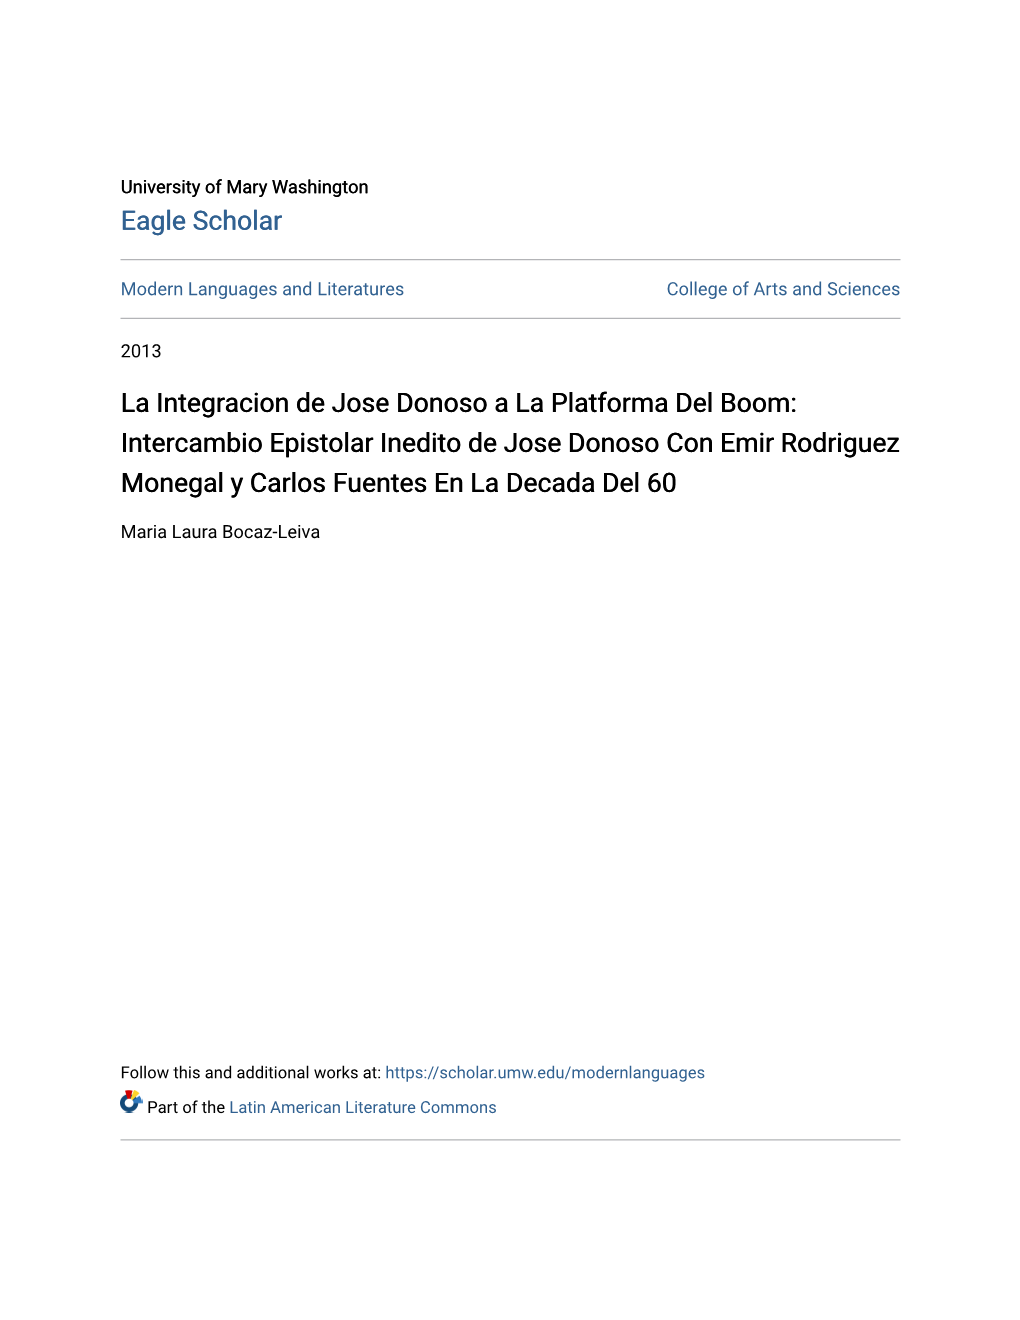 Intercambio Epistolar Inedito De Jose Donoso Con Emir Rodriguez Monegal Y Carlos Fuentes En La Decada Del 60